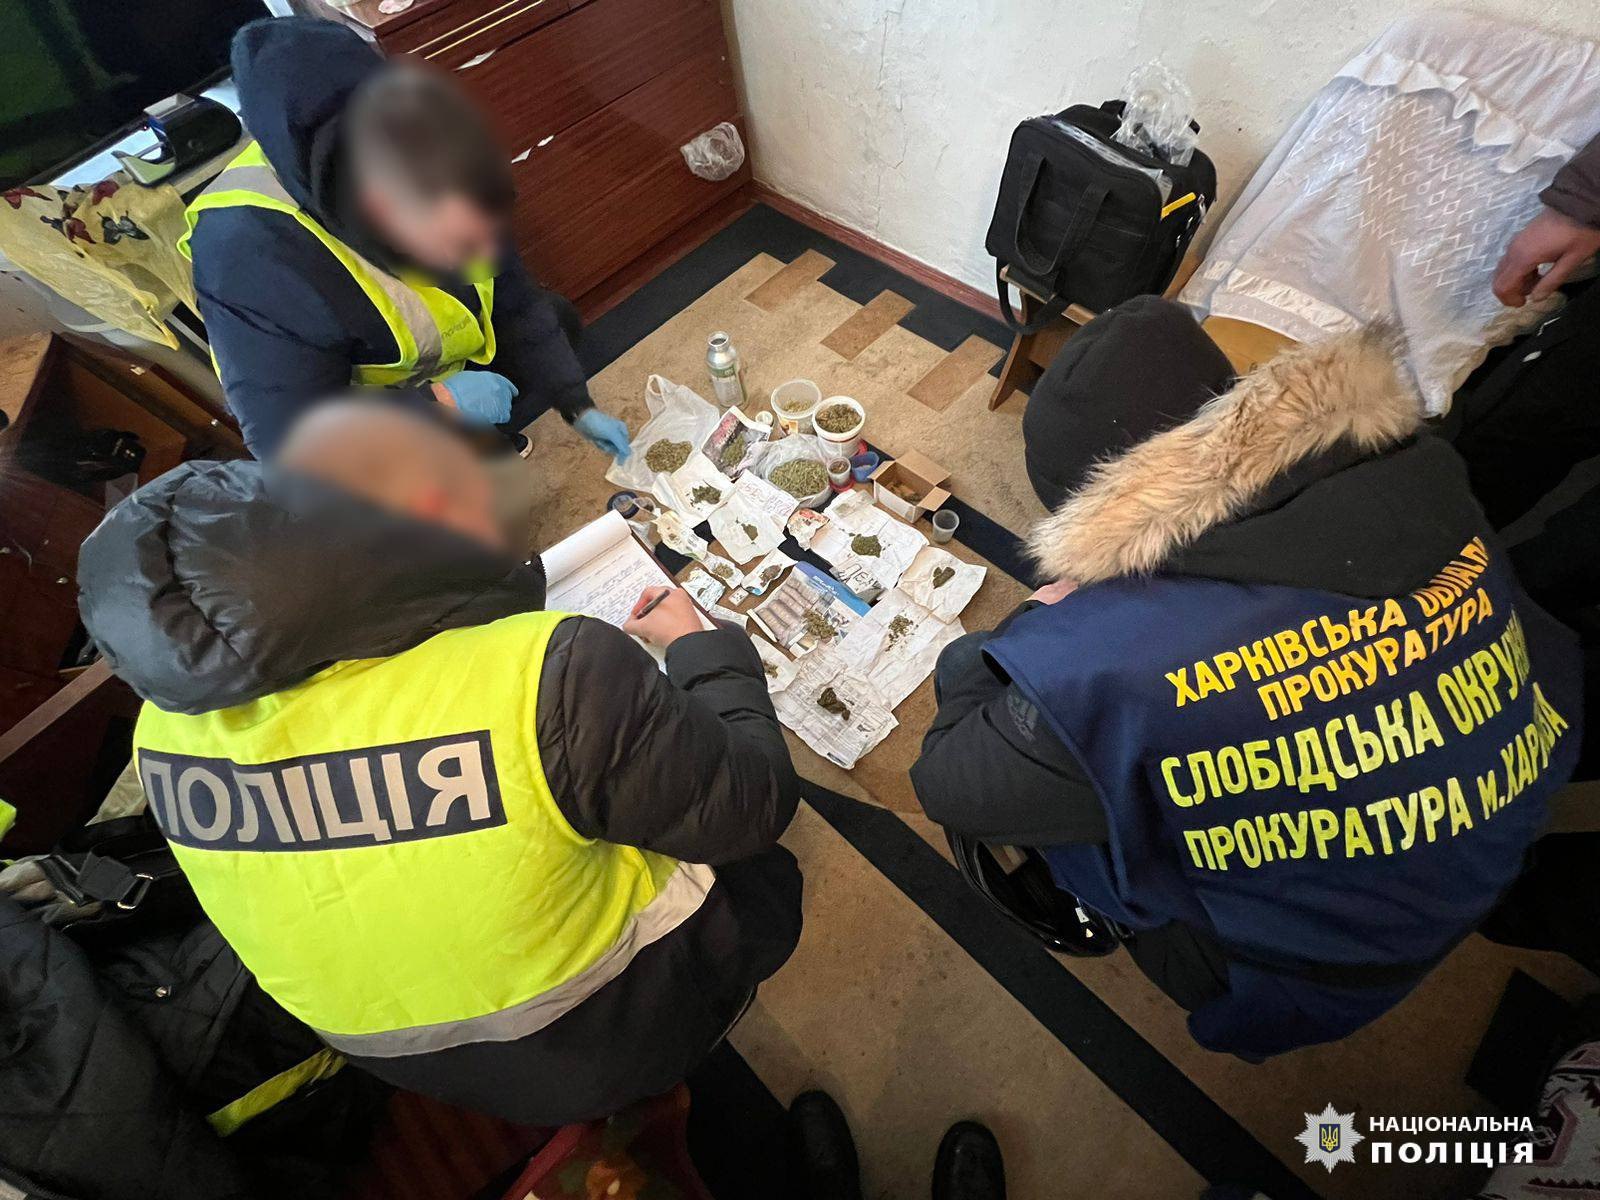 Новини Харкова: затримано наркорозповсюджувачів, яки відправляли товар поштою